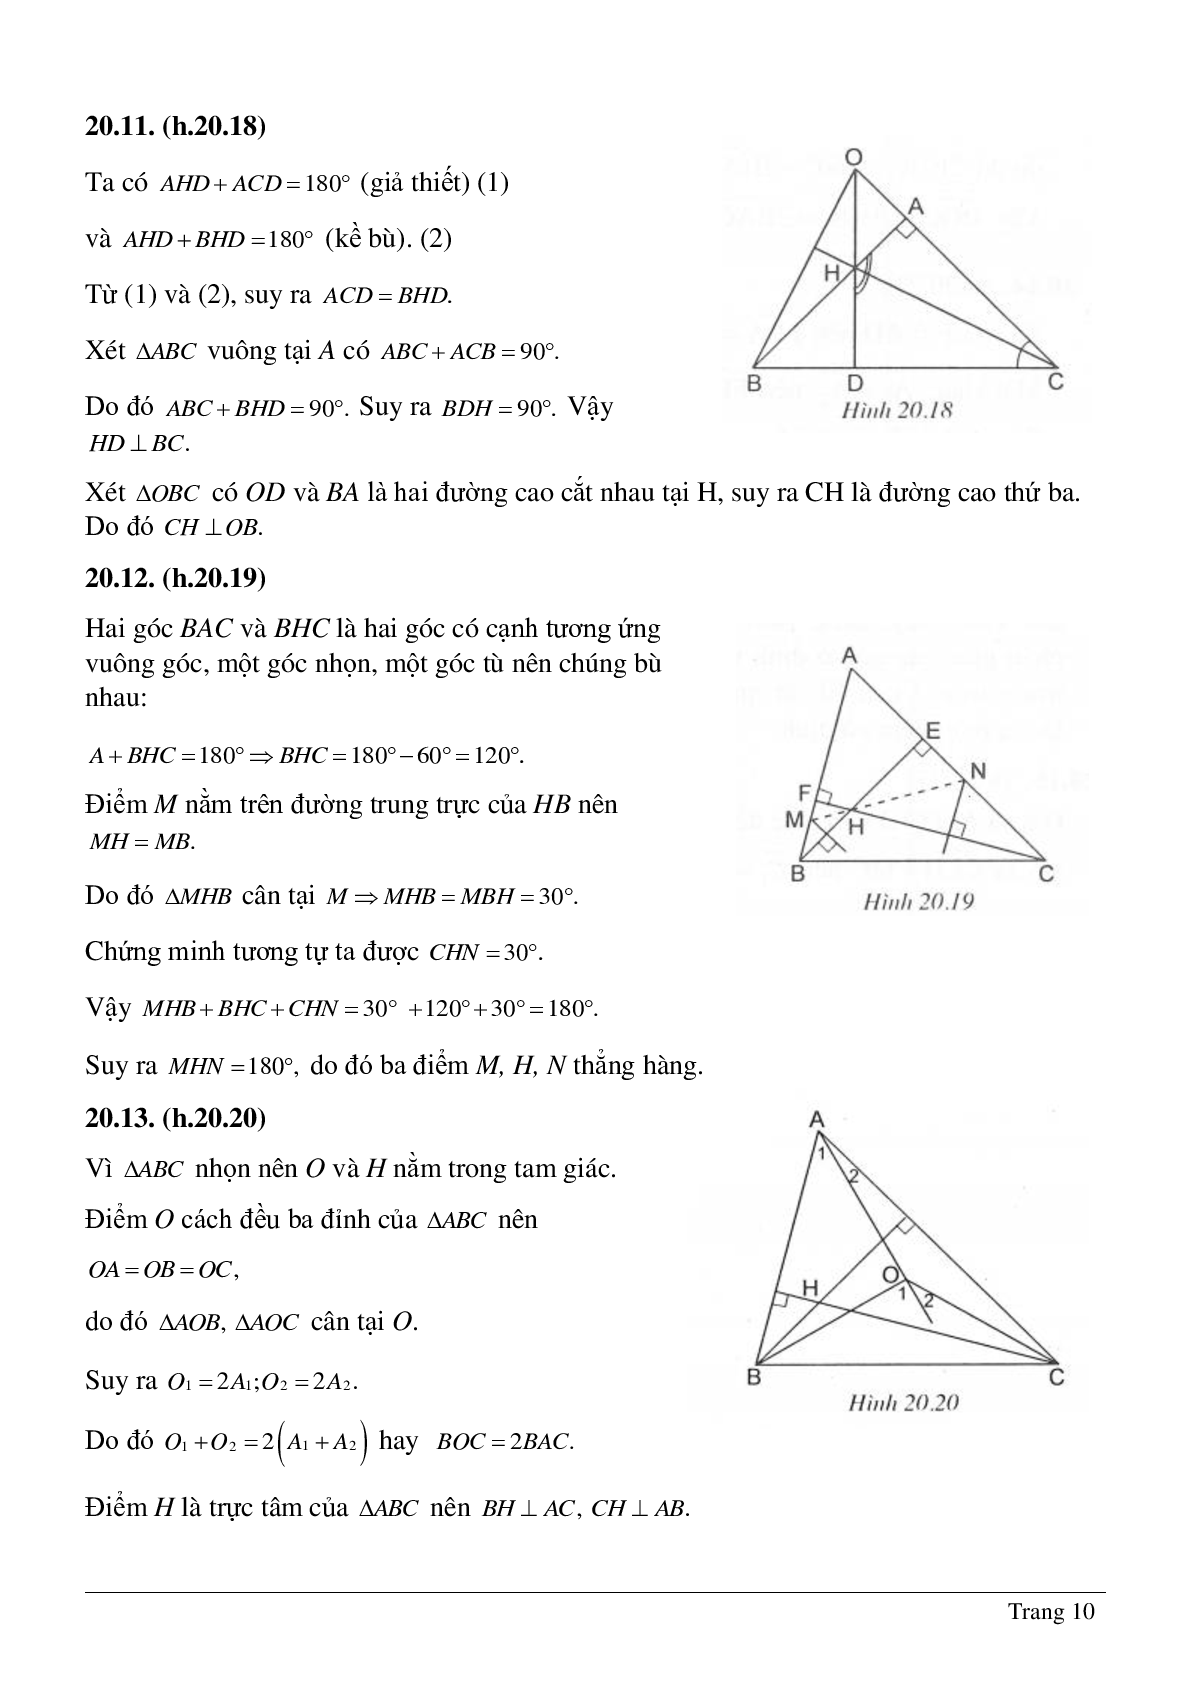 Tổng hợp những bài tập về Tính chất ba đường trung trực, ba đường cao của tam giác có lời giải (trang 10)